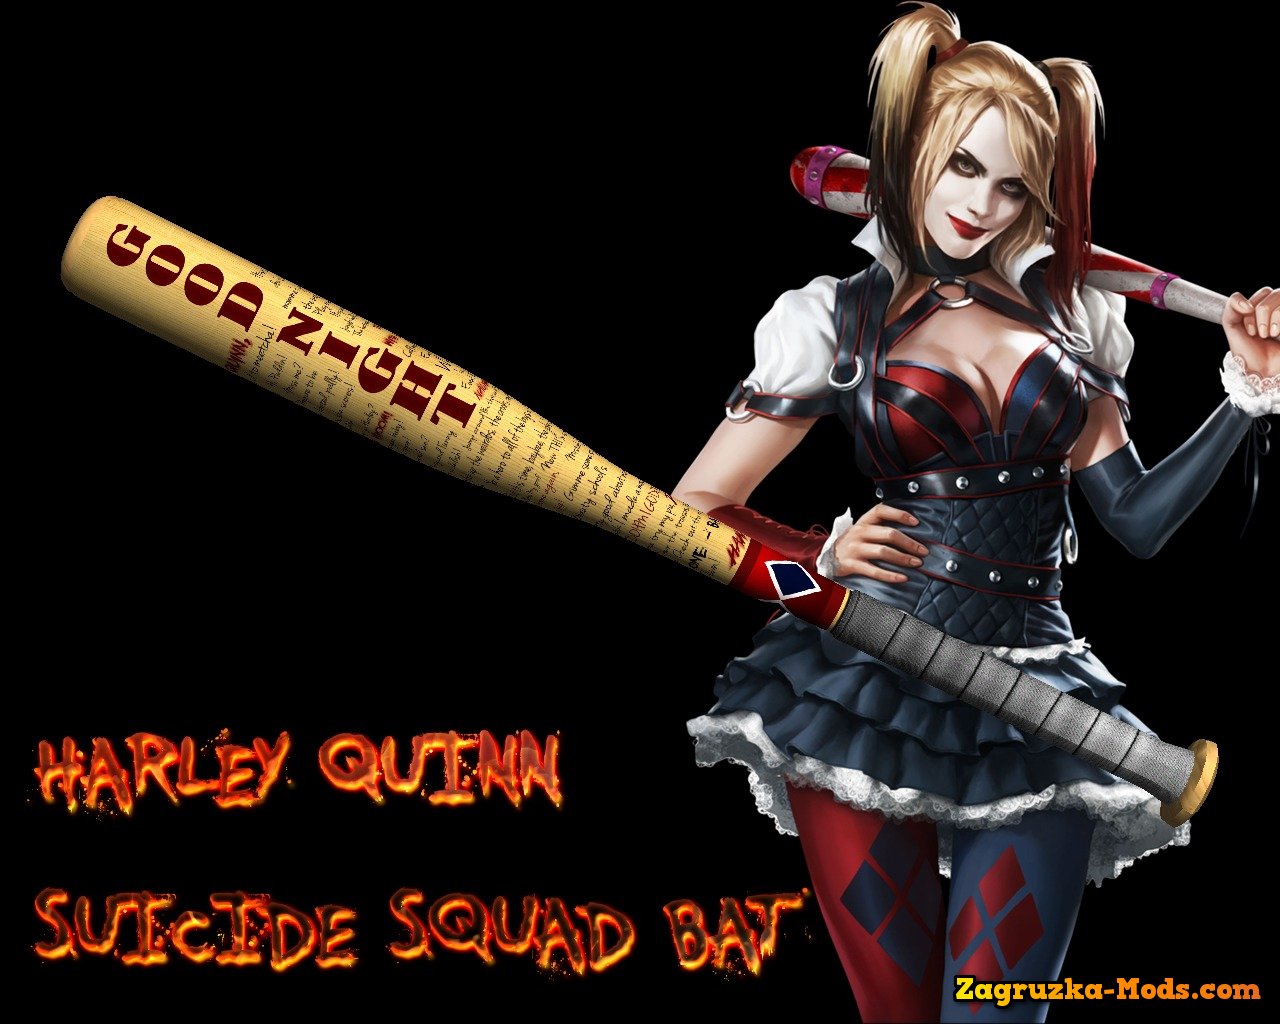 Harley Quinn Suicide Squad Bat v1.1 for GTA 5